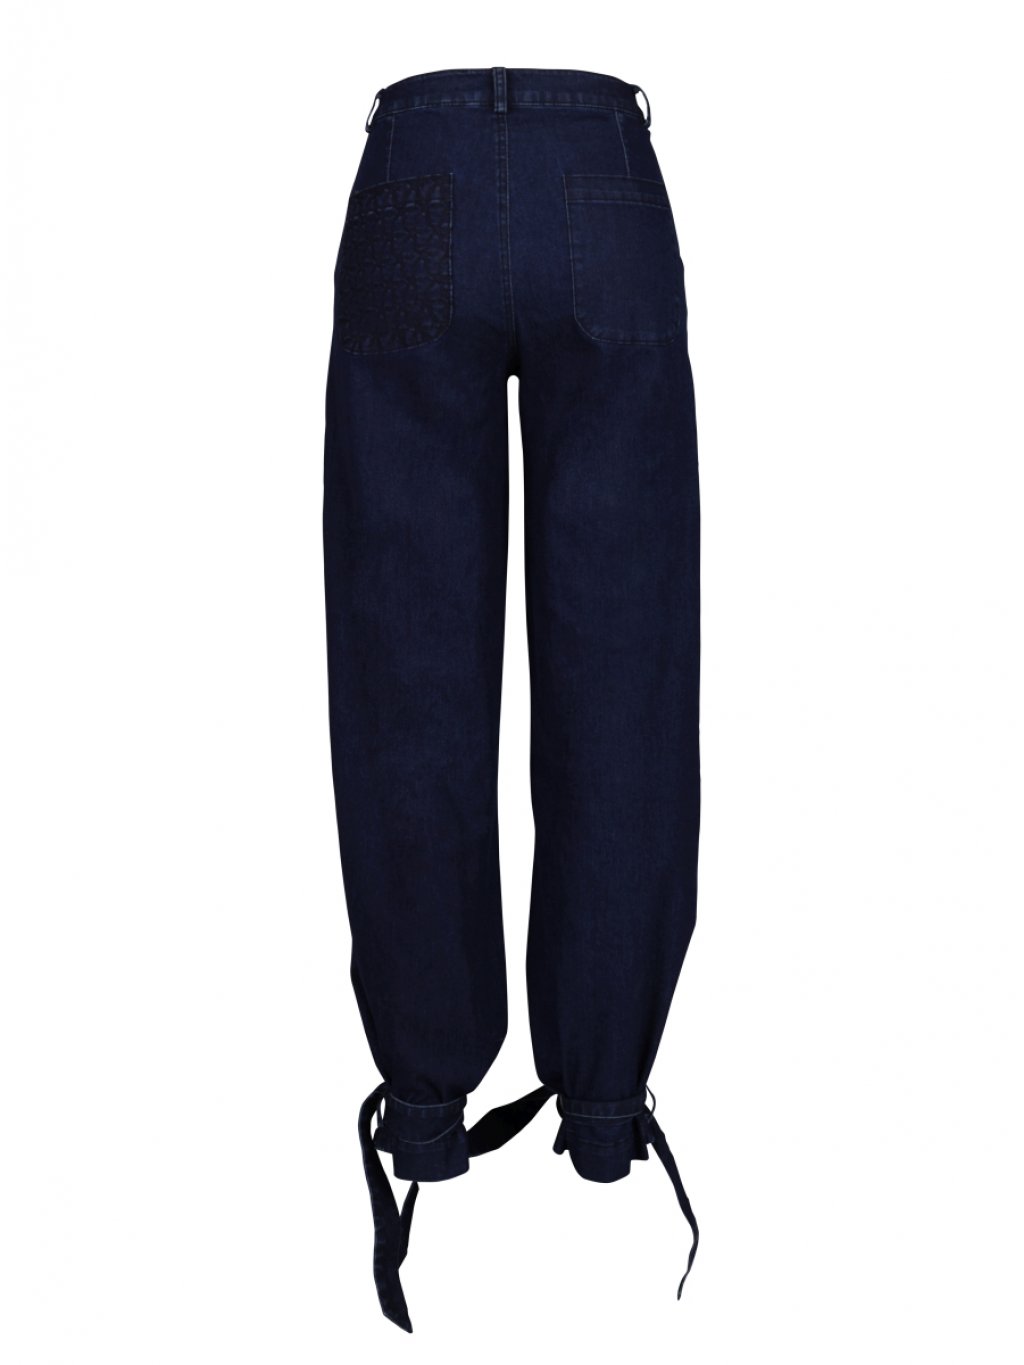 Kalhoty NU Denmark 7927-12 tmavě modré džíny 